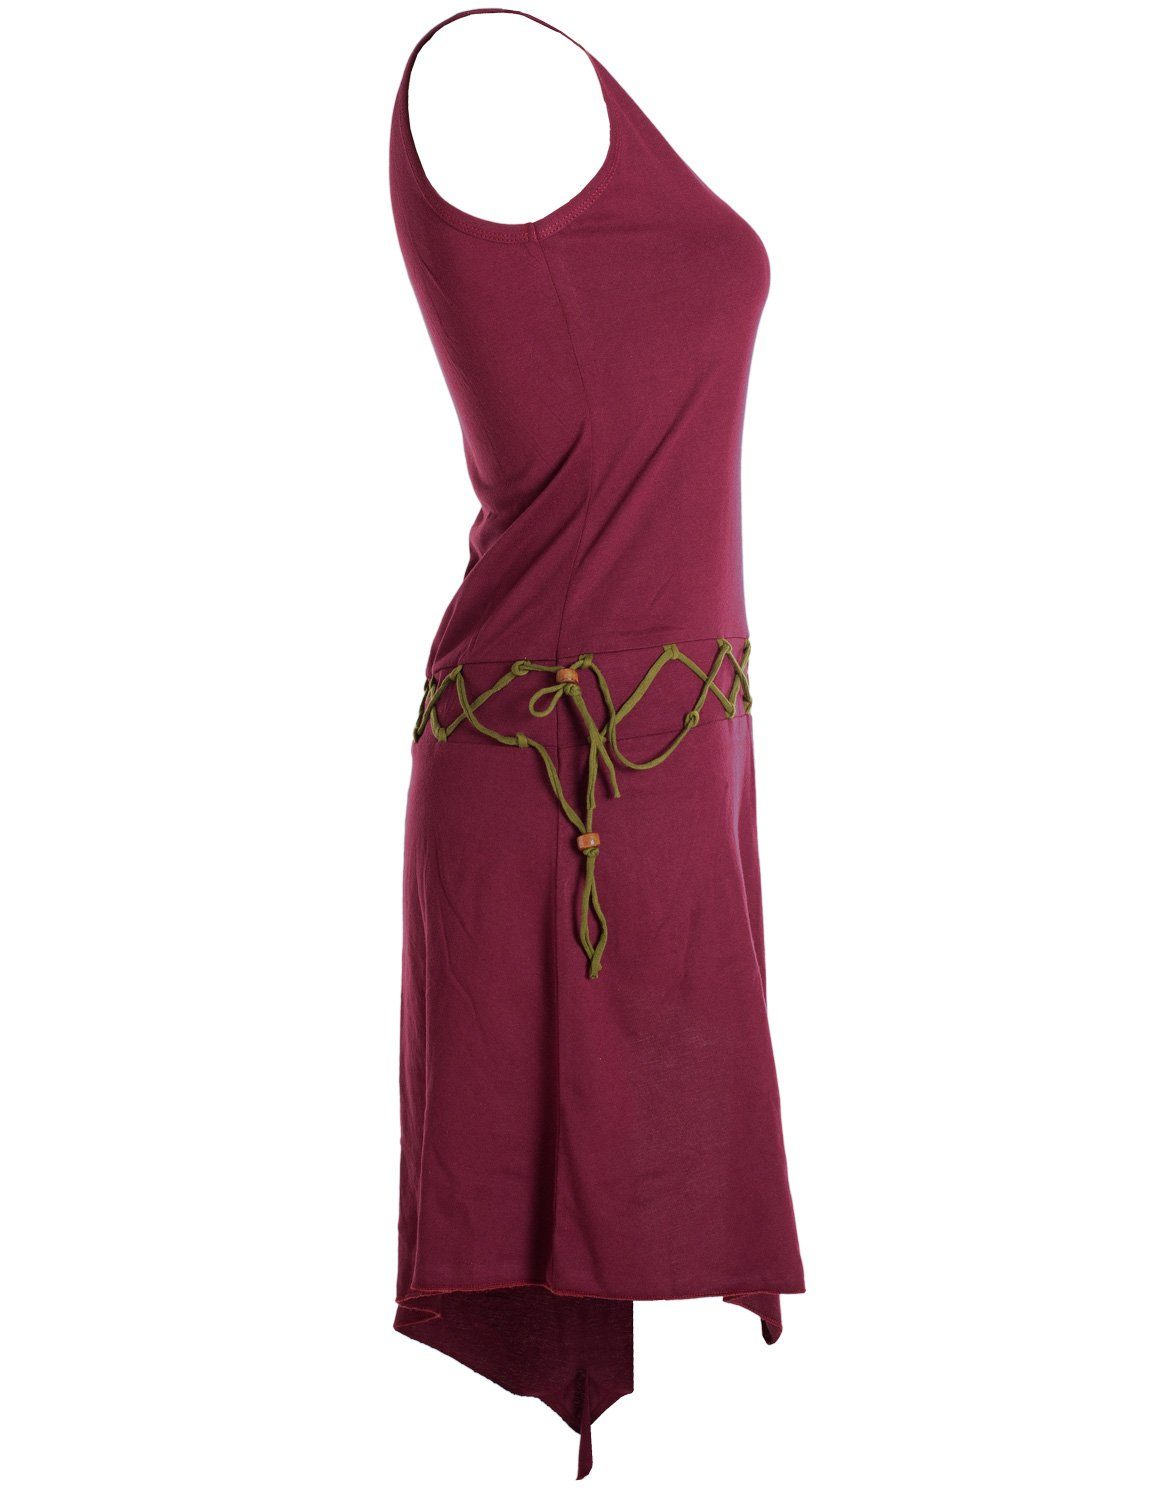 Vishes dunkelrot Hippie, Goa asymmetrisch Sommerkleid Kleid Elfen Beinausschnitt Ärmelloses Style Boho, Gürtel-Schnürung